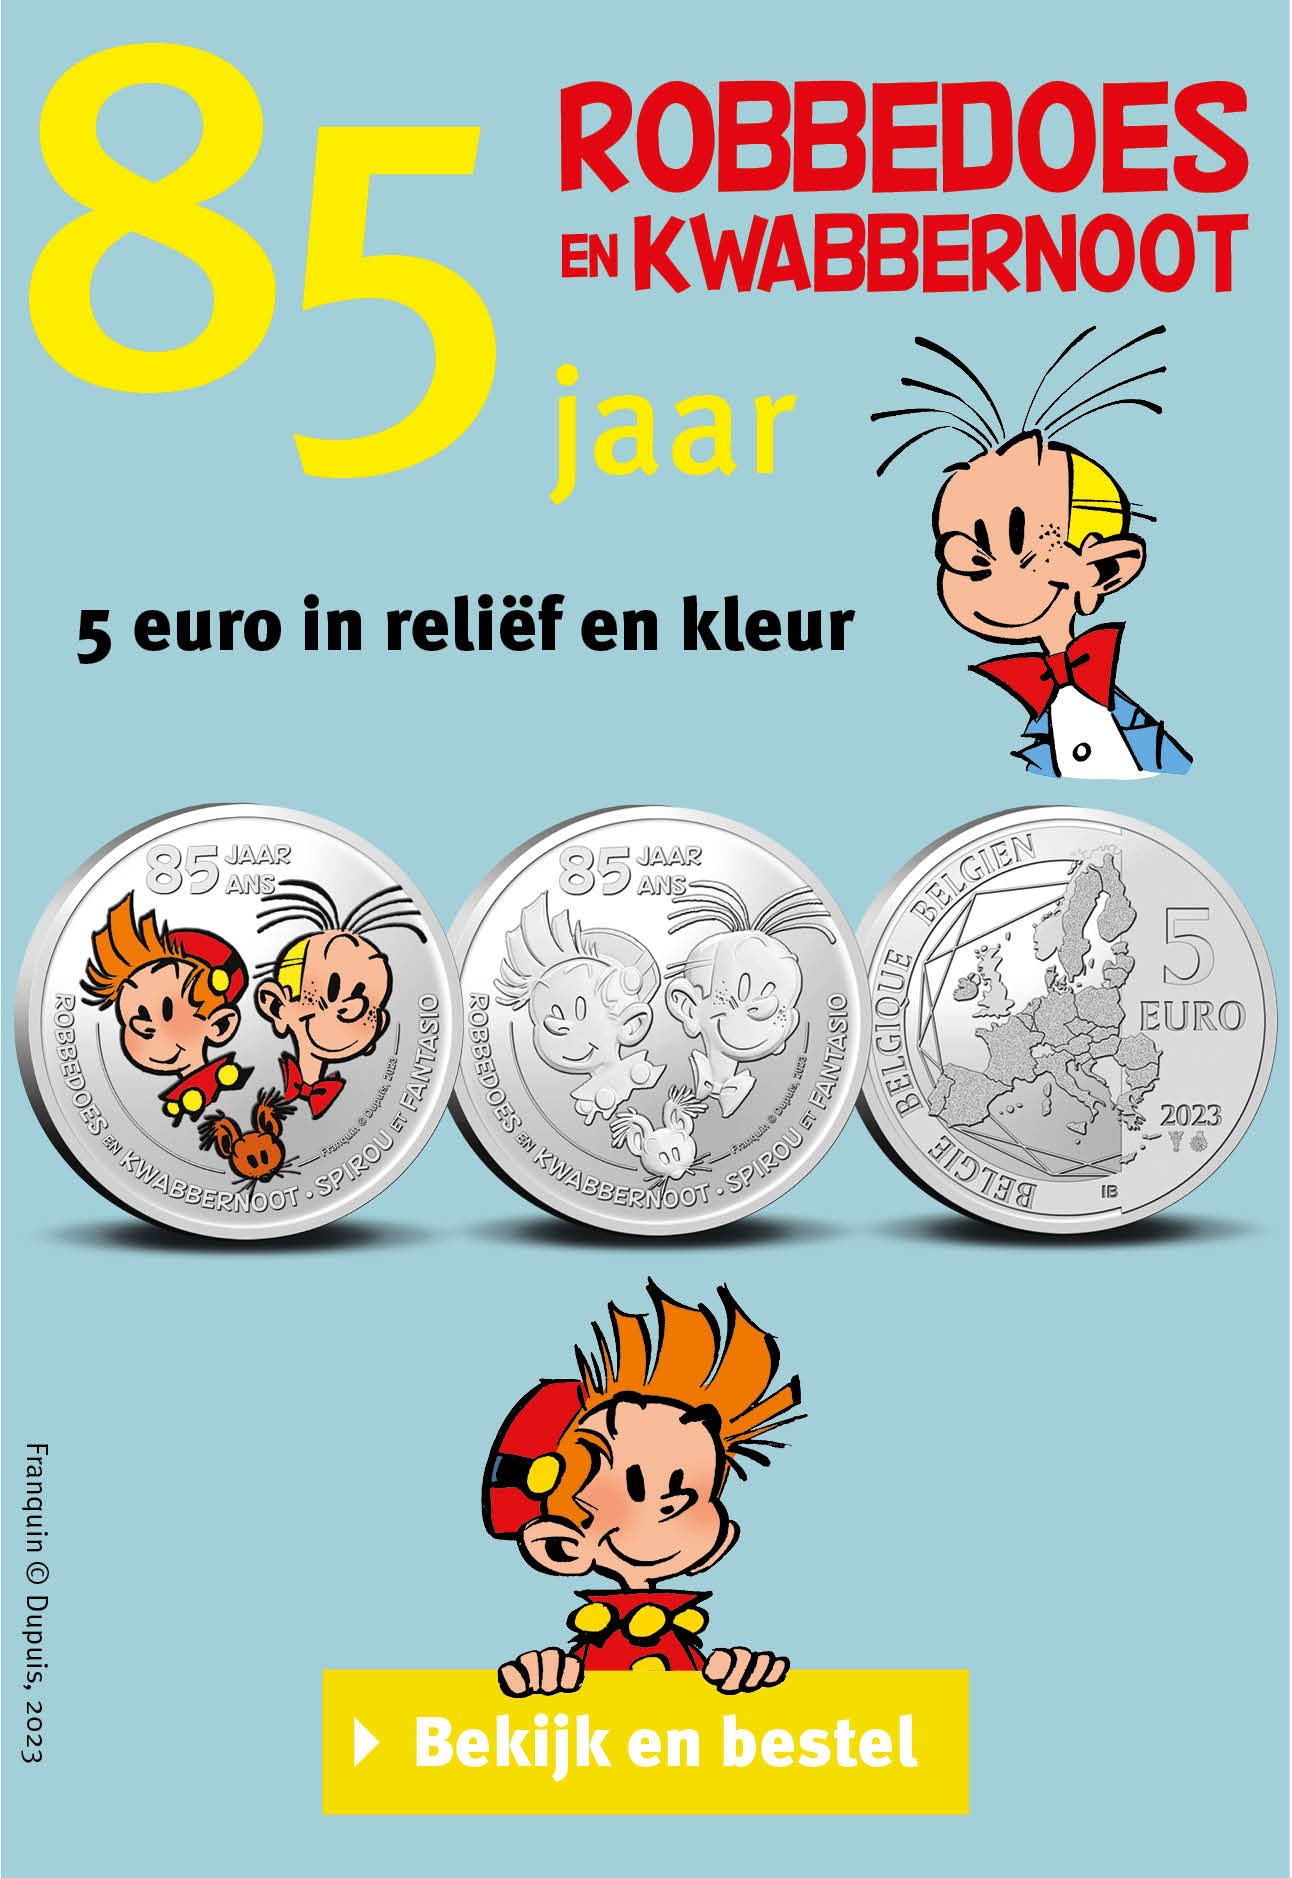 Bekijk en bestel: België 5 euromunt 2023 ‘85 jaar Robbedoes & Kwabbernoot’ 